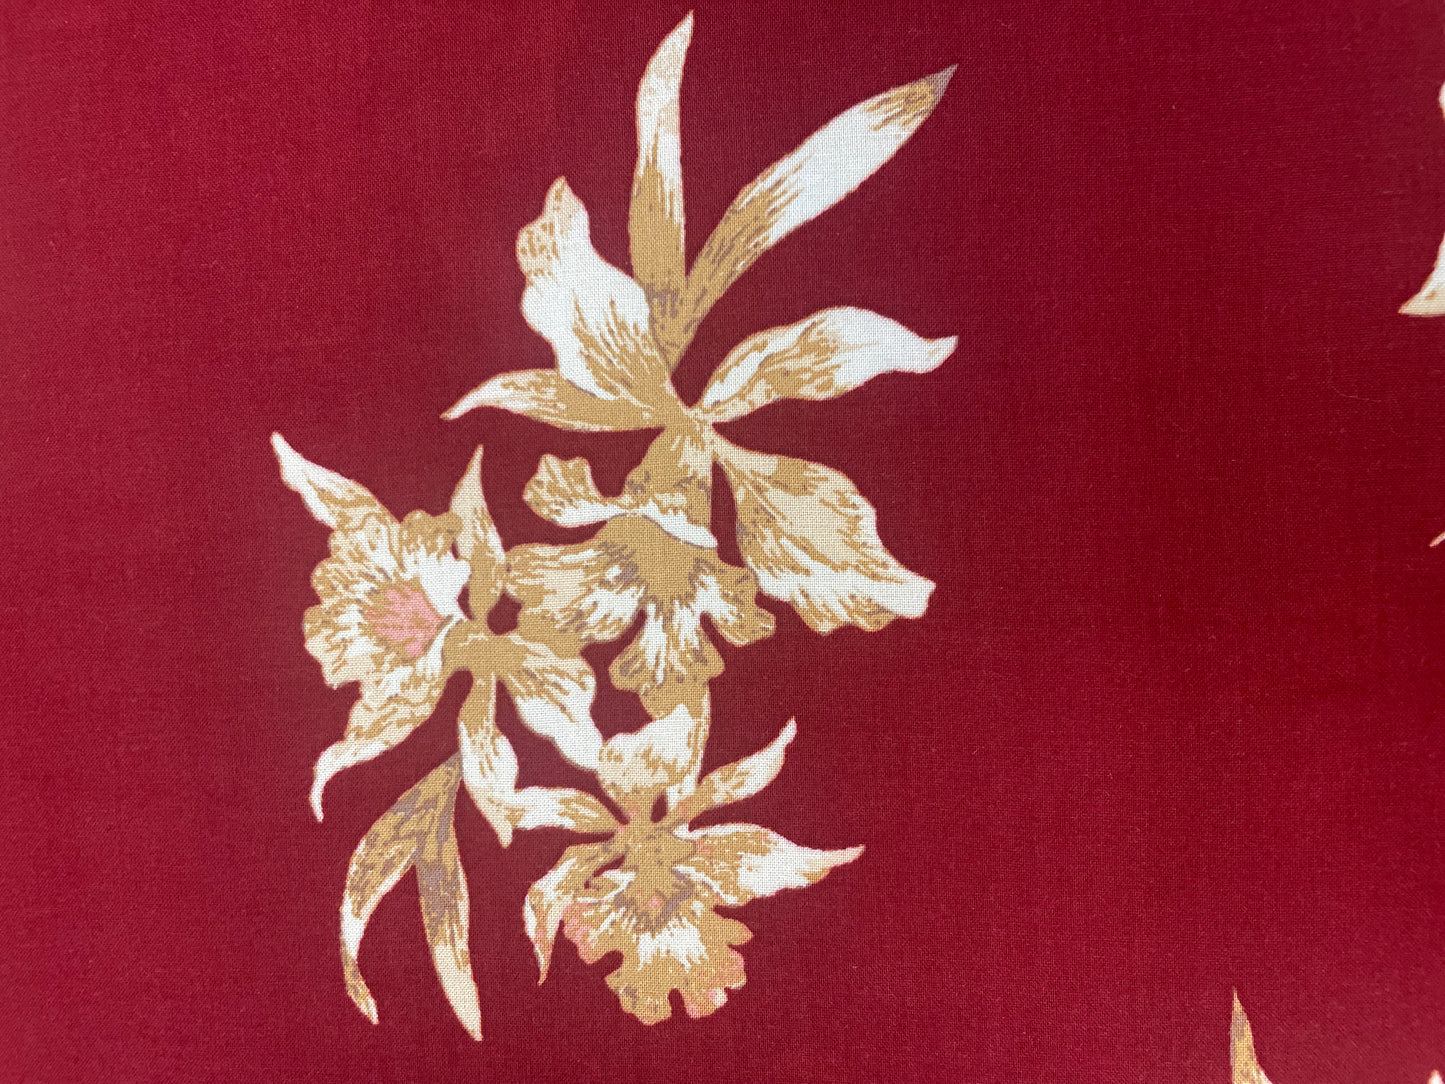 Floral Rayon Print - Burgundy, White & Tan